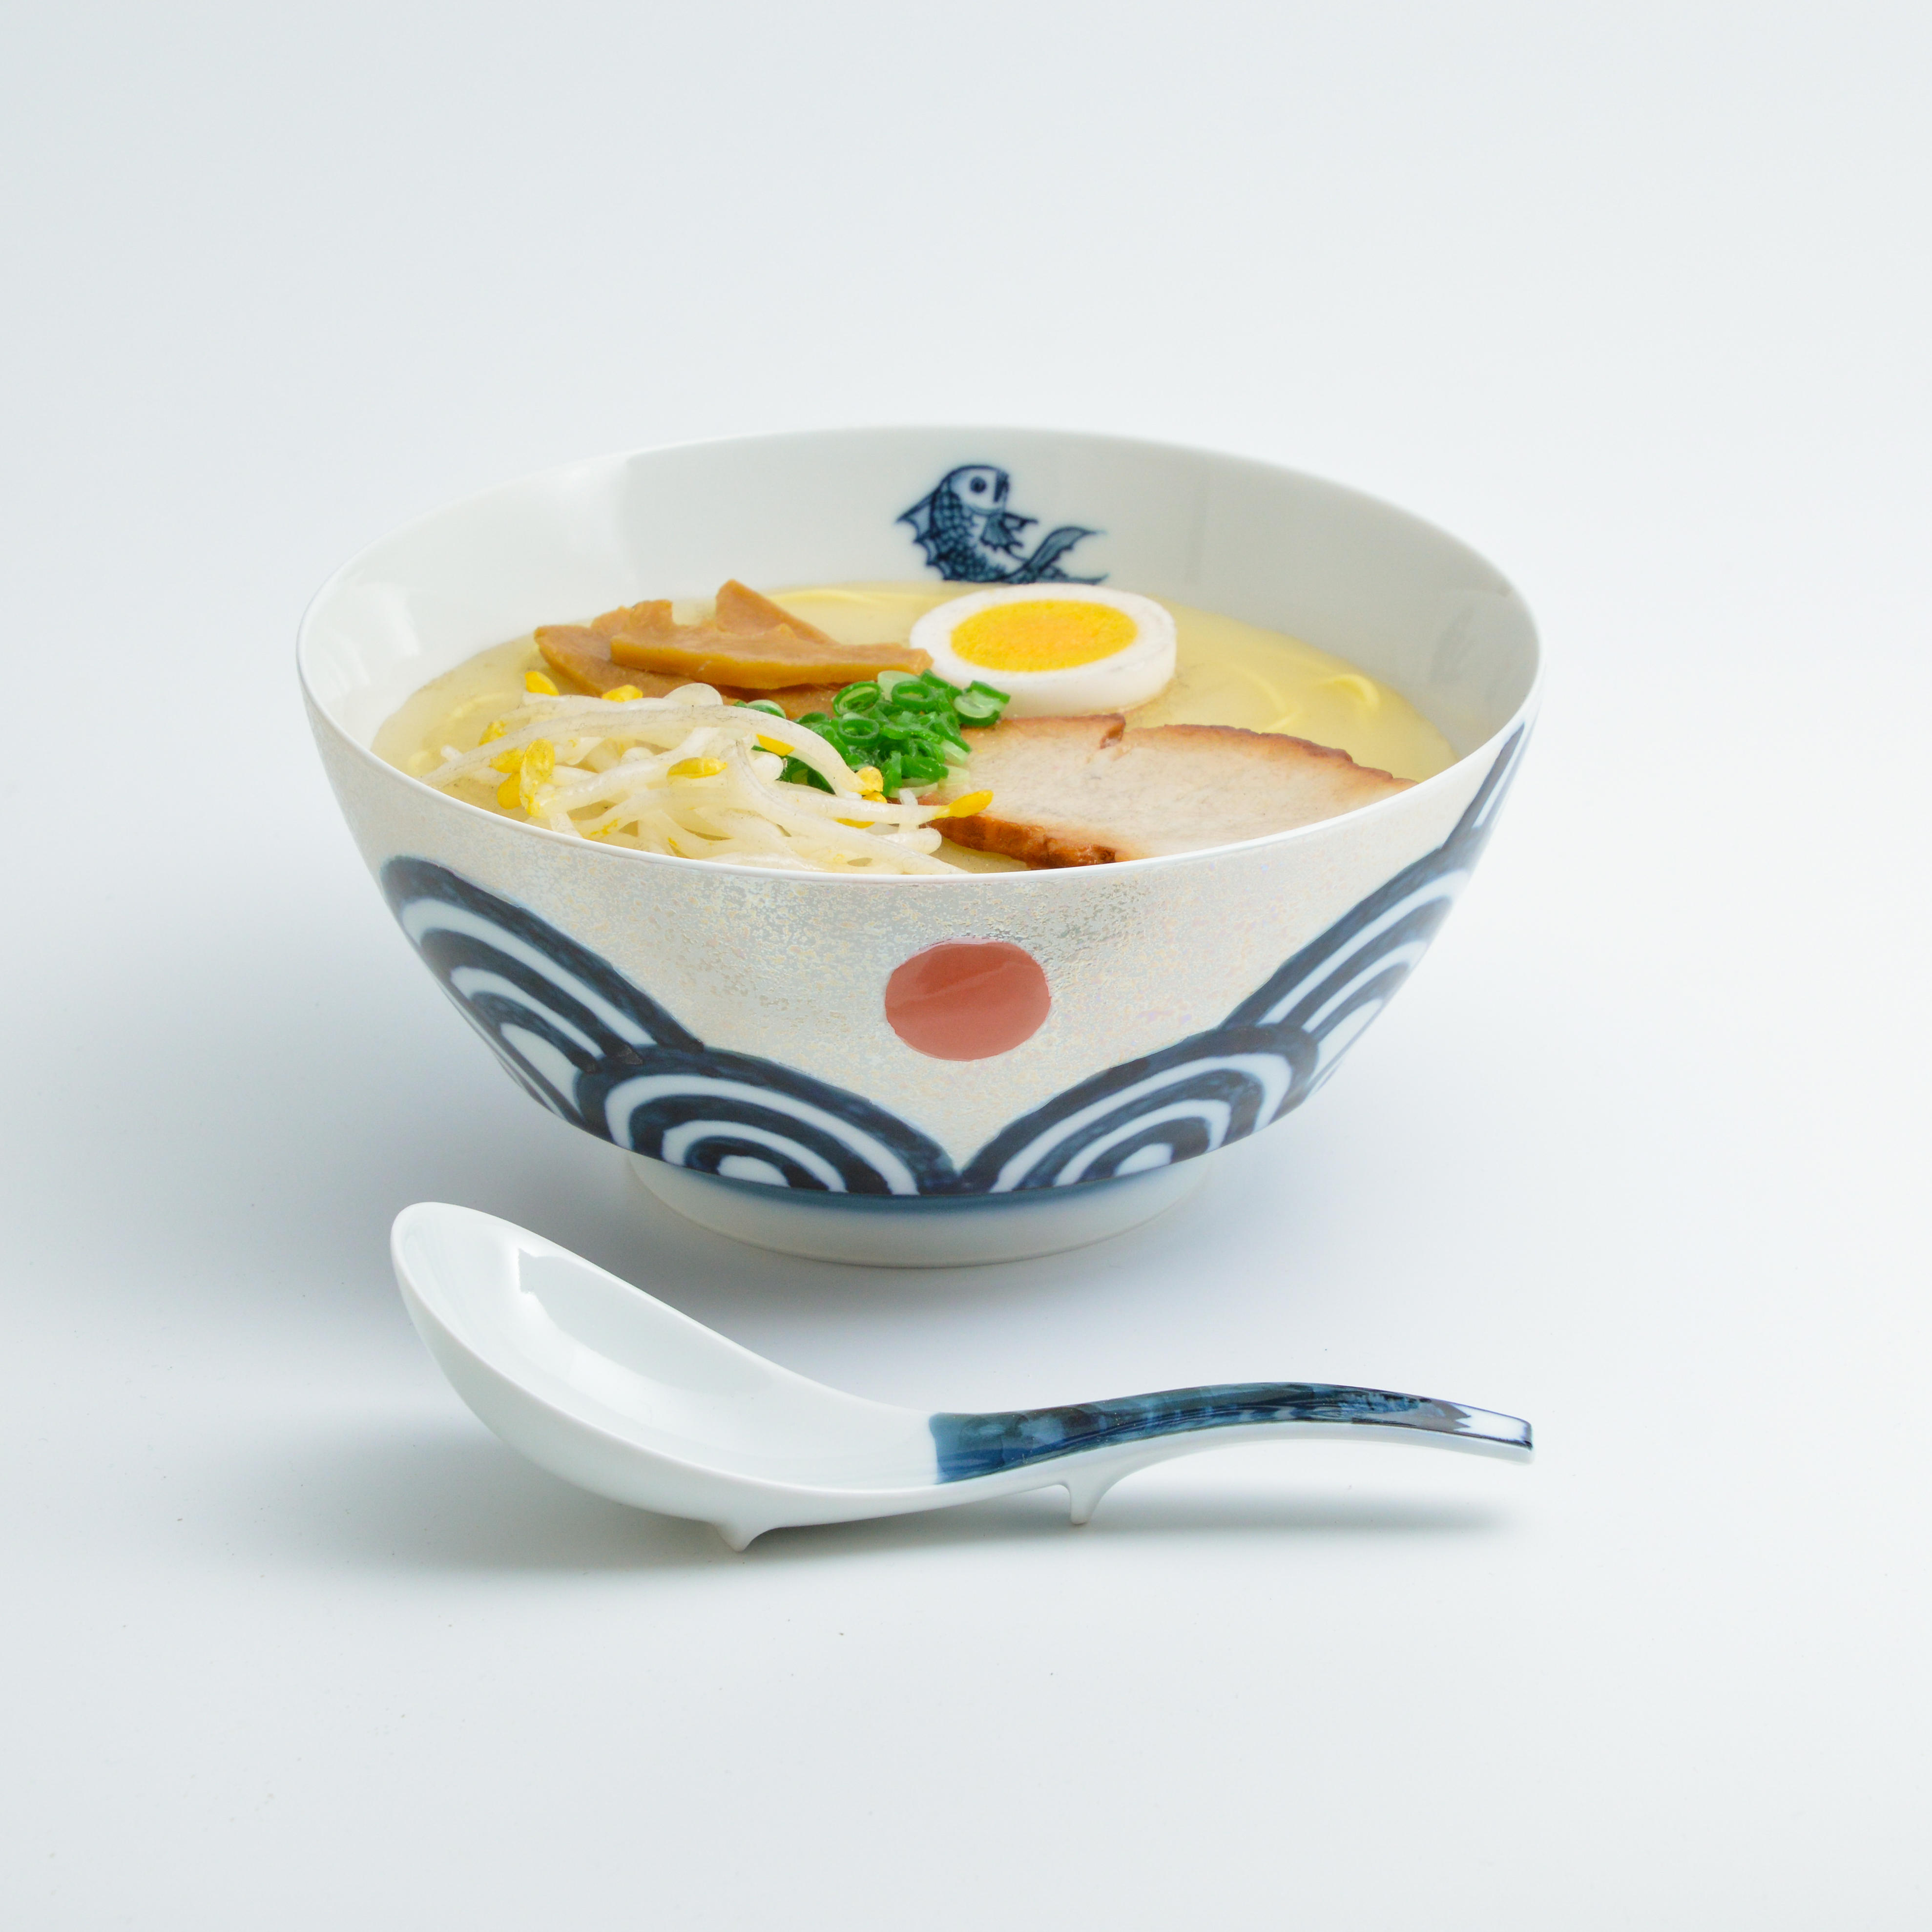 究極のラーメン鉢<br />家庭でインスタントラーメンをおいしく食べるための器をコンセプトとし、使い勝手の良さを徹底的に考え抜いて作られた人気商品です。